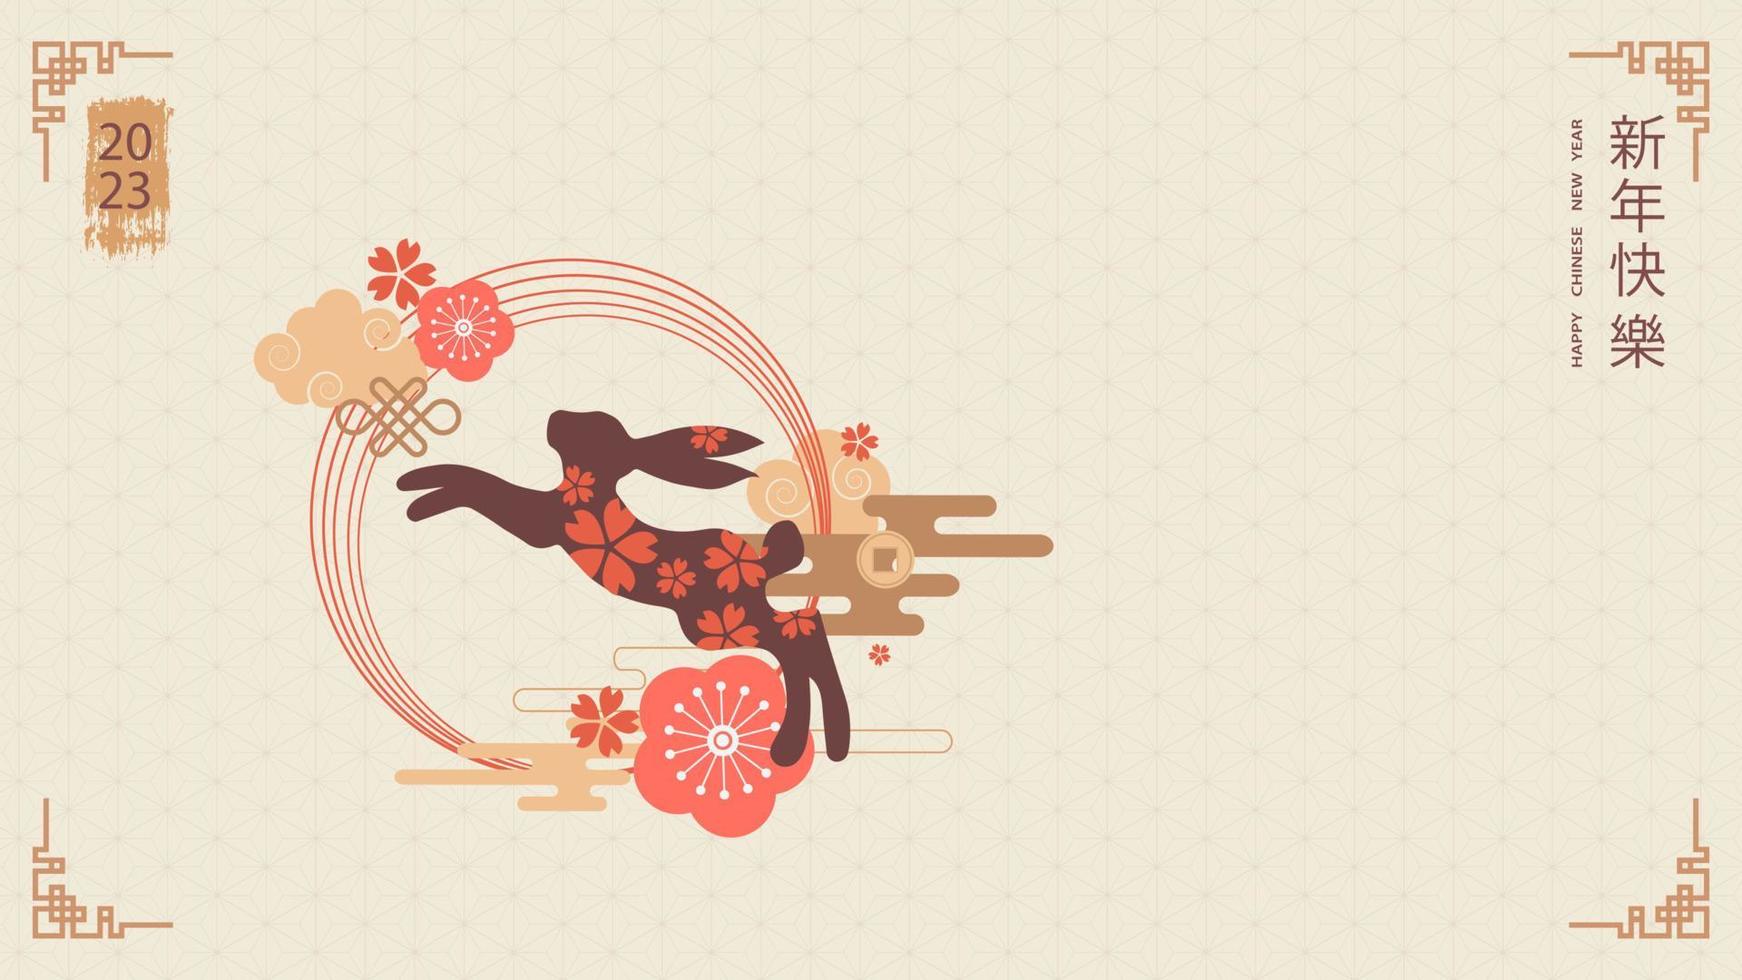 plantilla de banner para el diseño del año nuevo chino con conejo saltando y patrones y elementos tradicionales. traducción del chino - feliz año nuevo, símbolo de conejo. ilustración vectorial vector